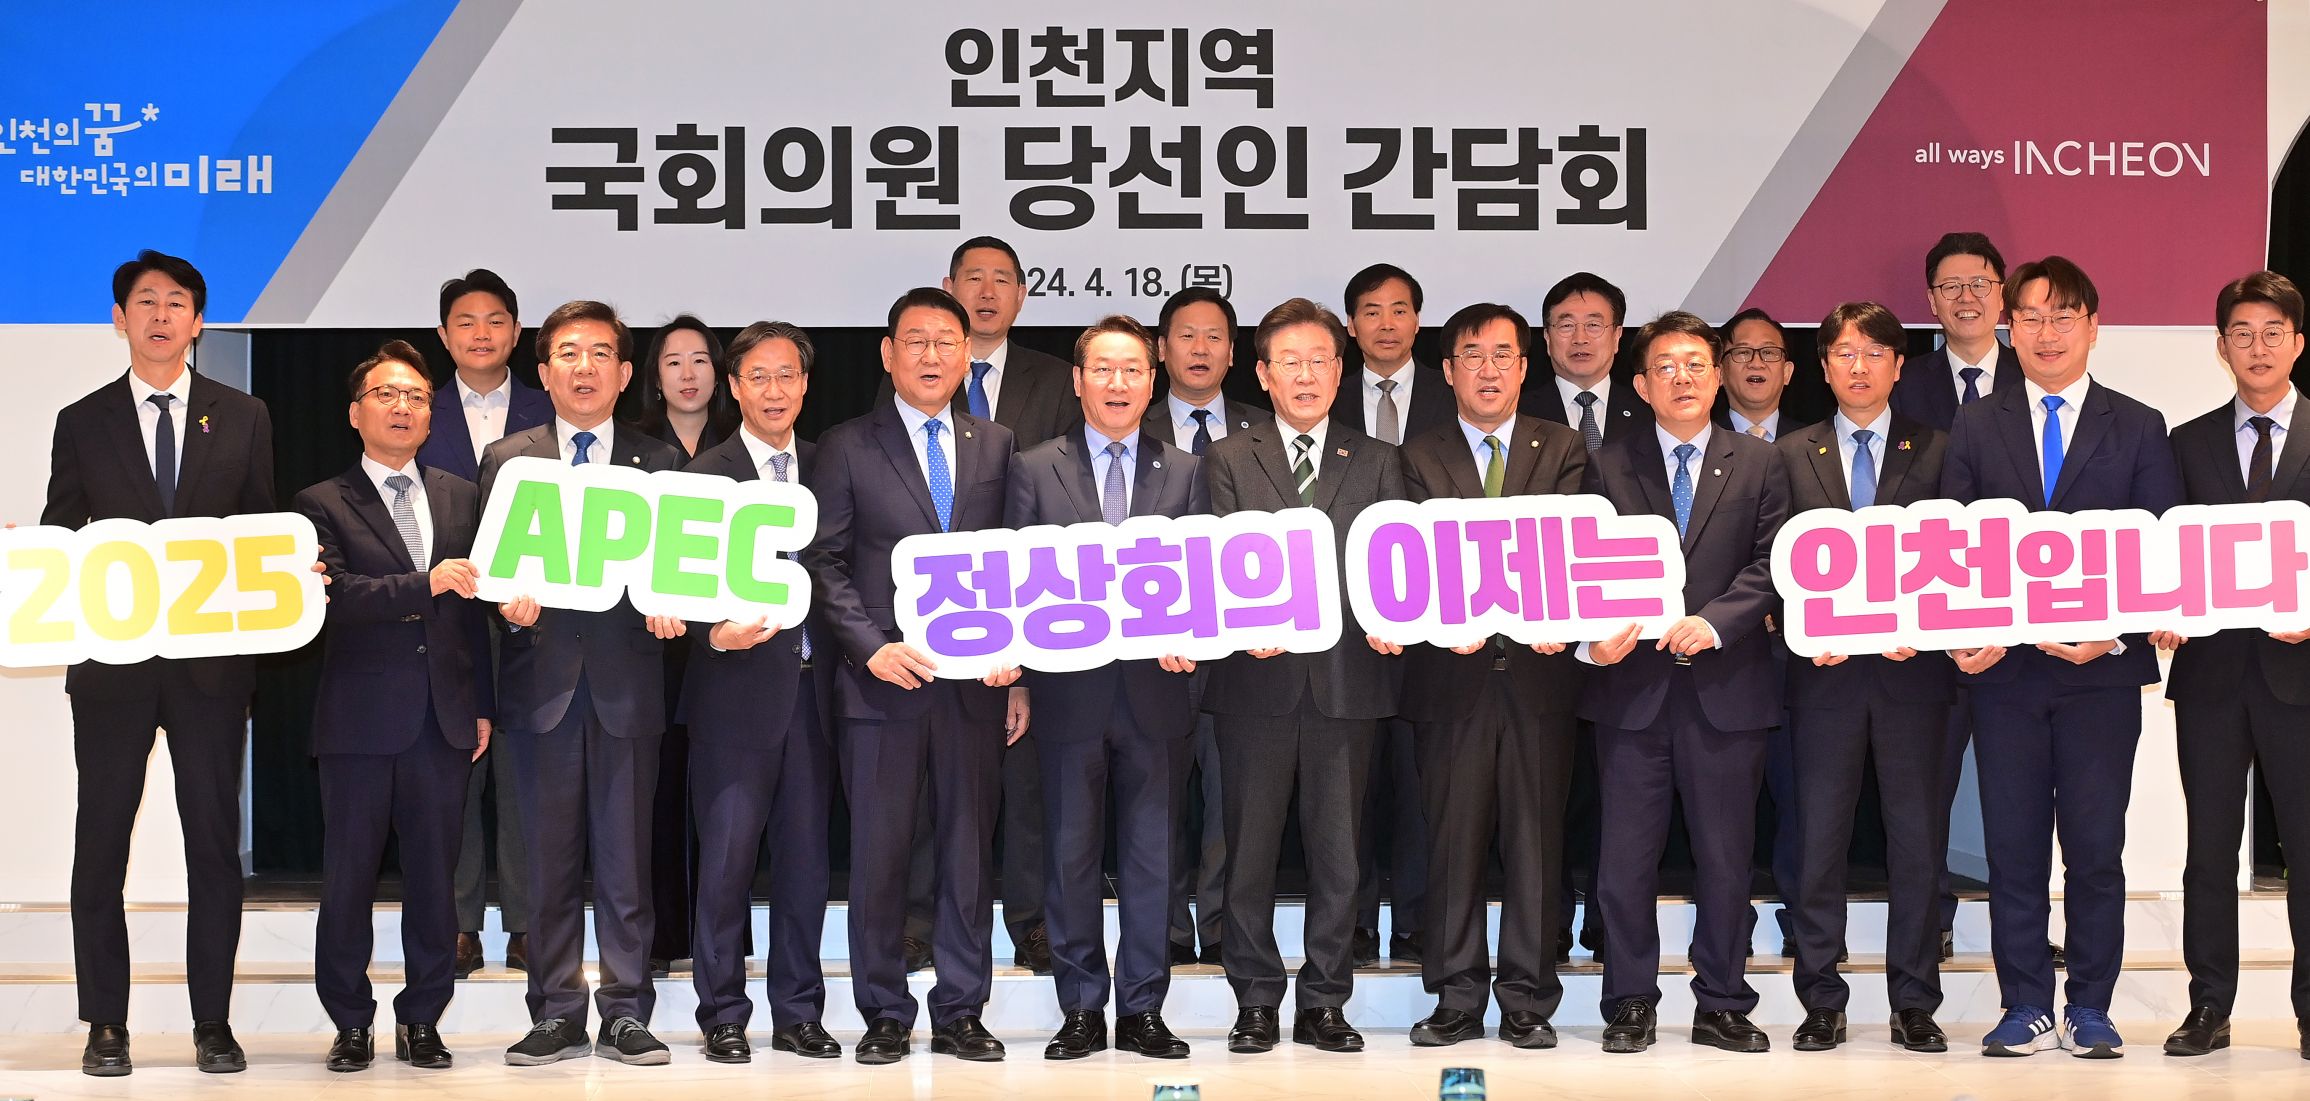 인천시, 지역 국회의원 당선인들 만나 초당적 협력 요청